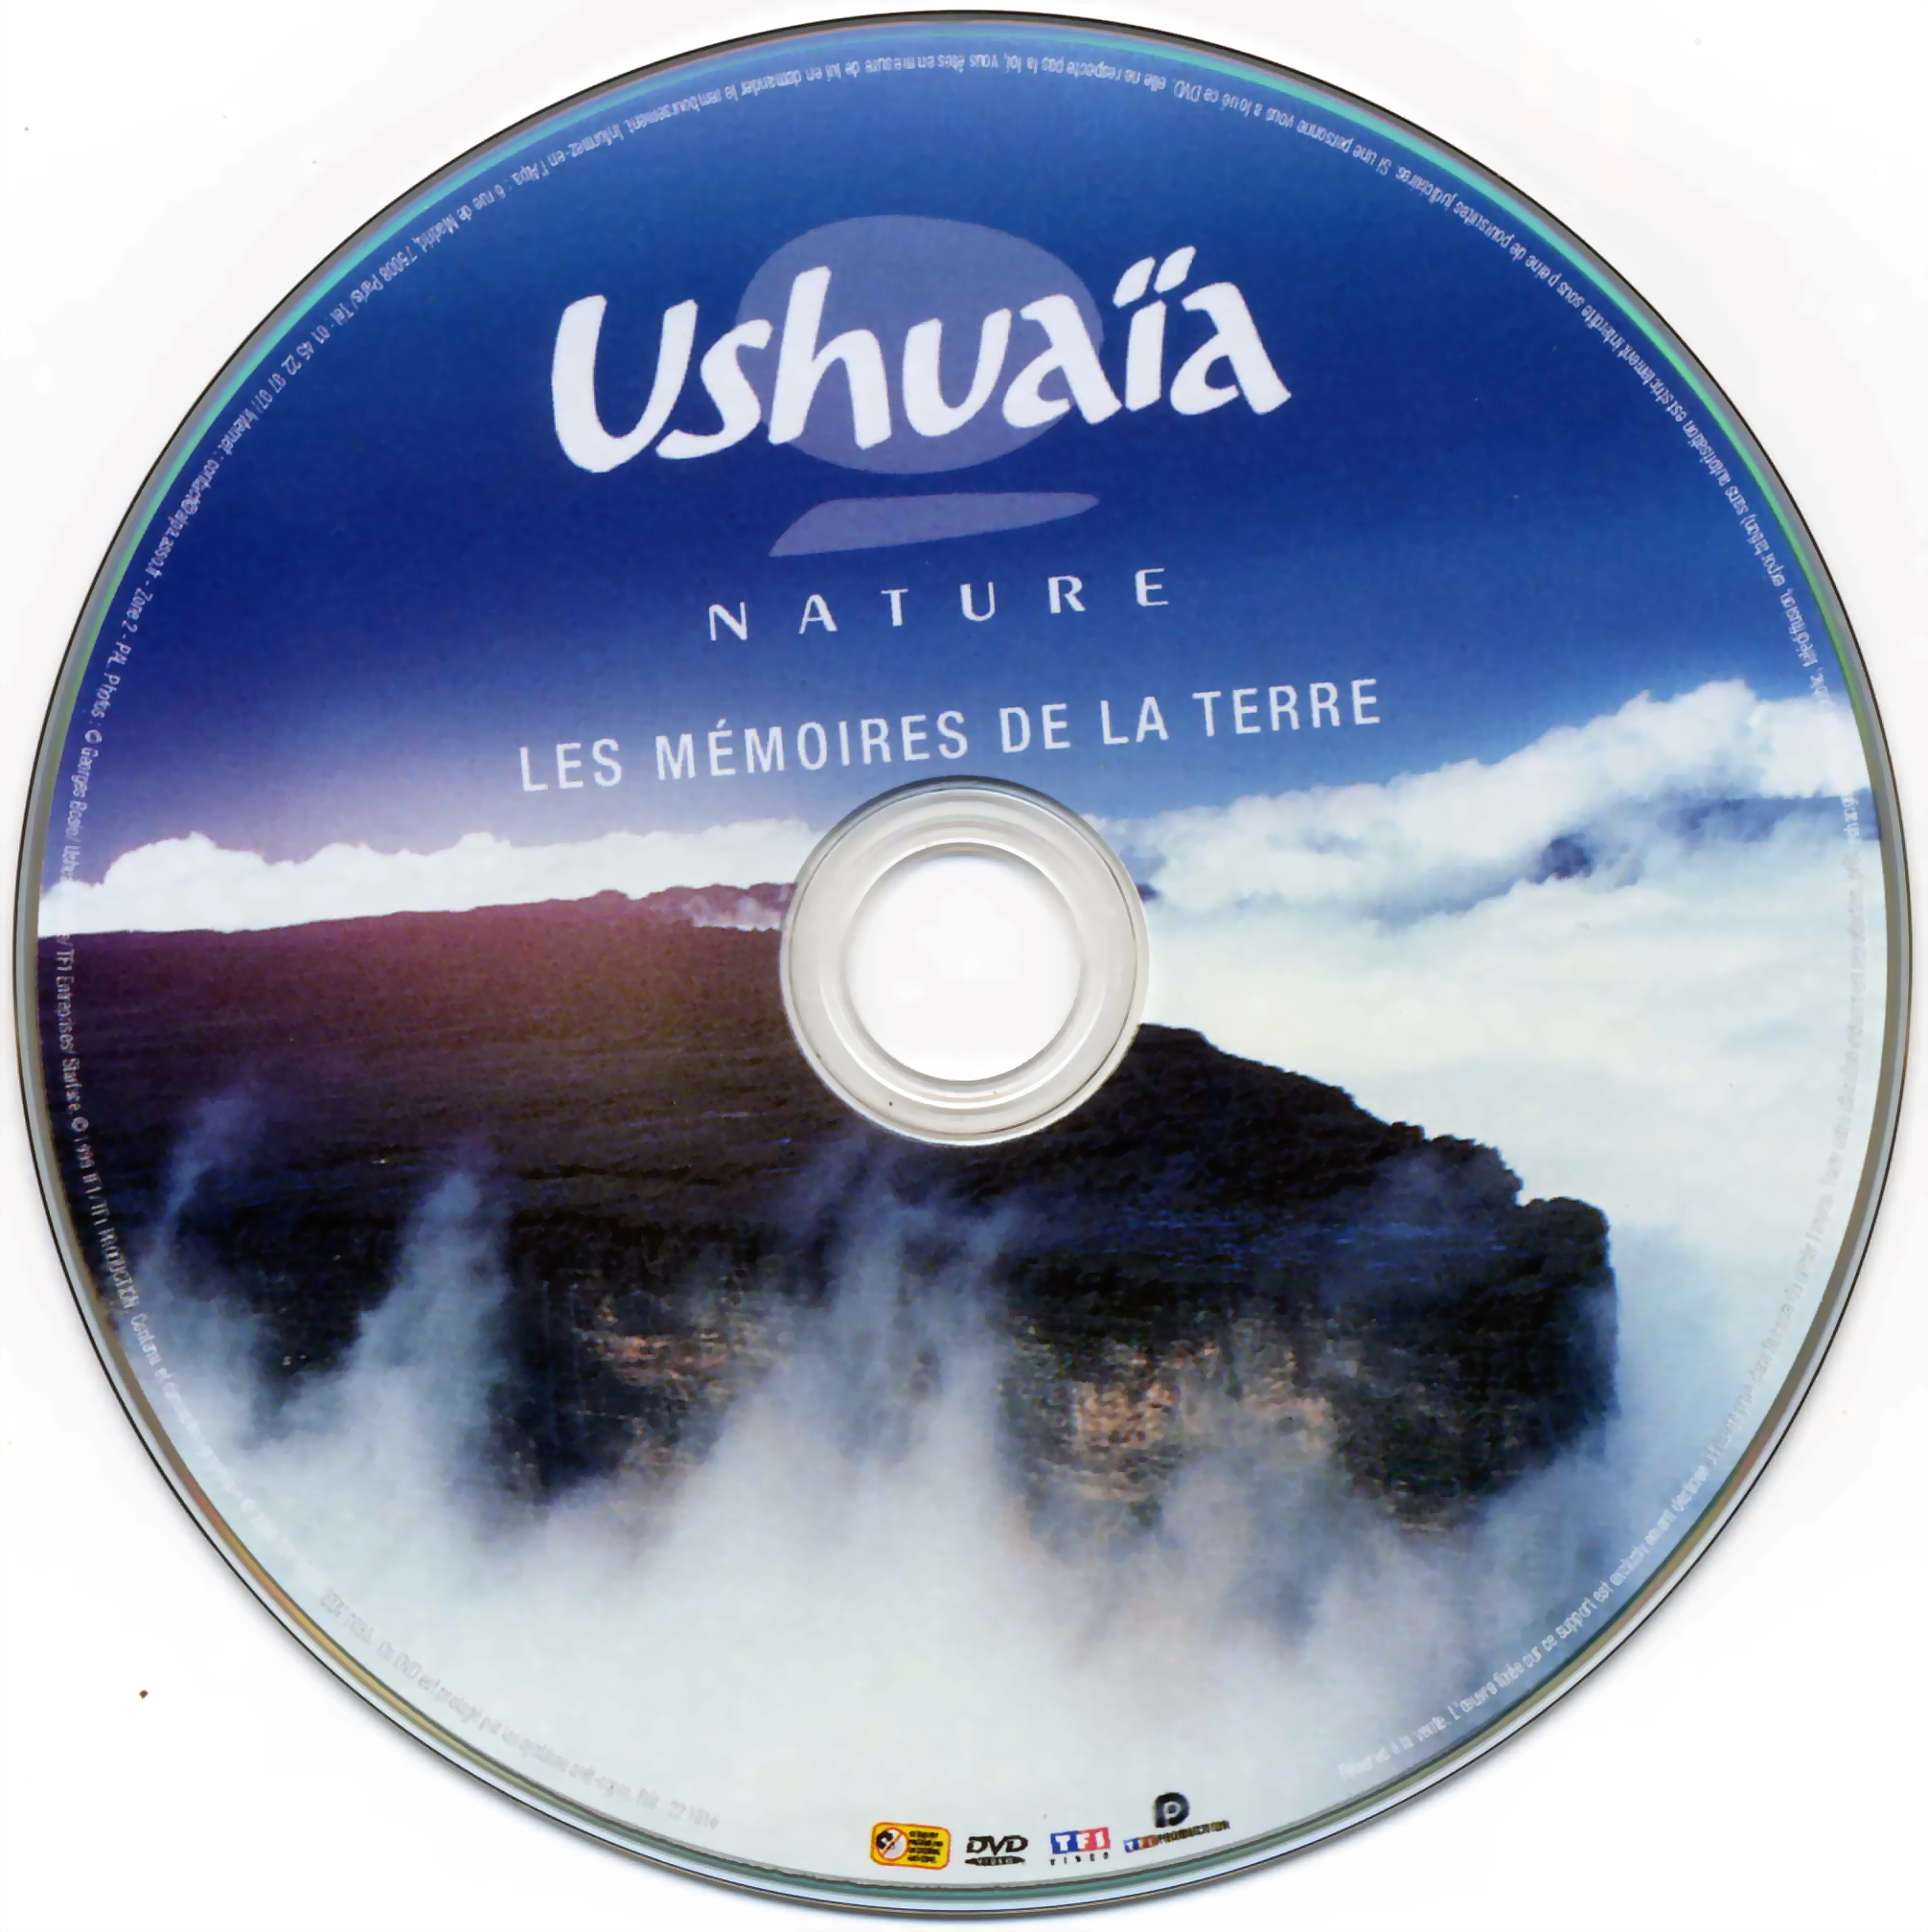 Ushuaia Nature - Les Memoires de la Terre